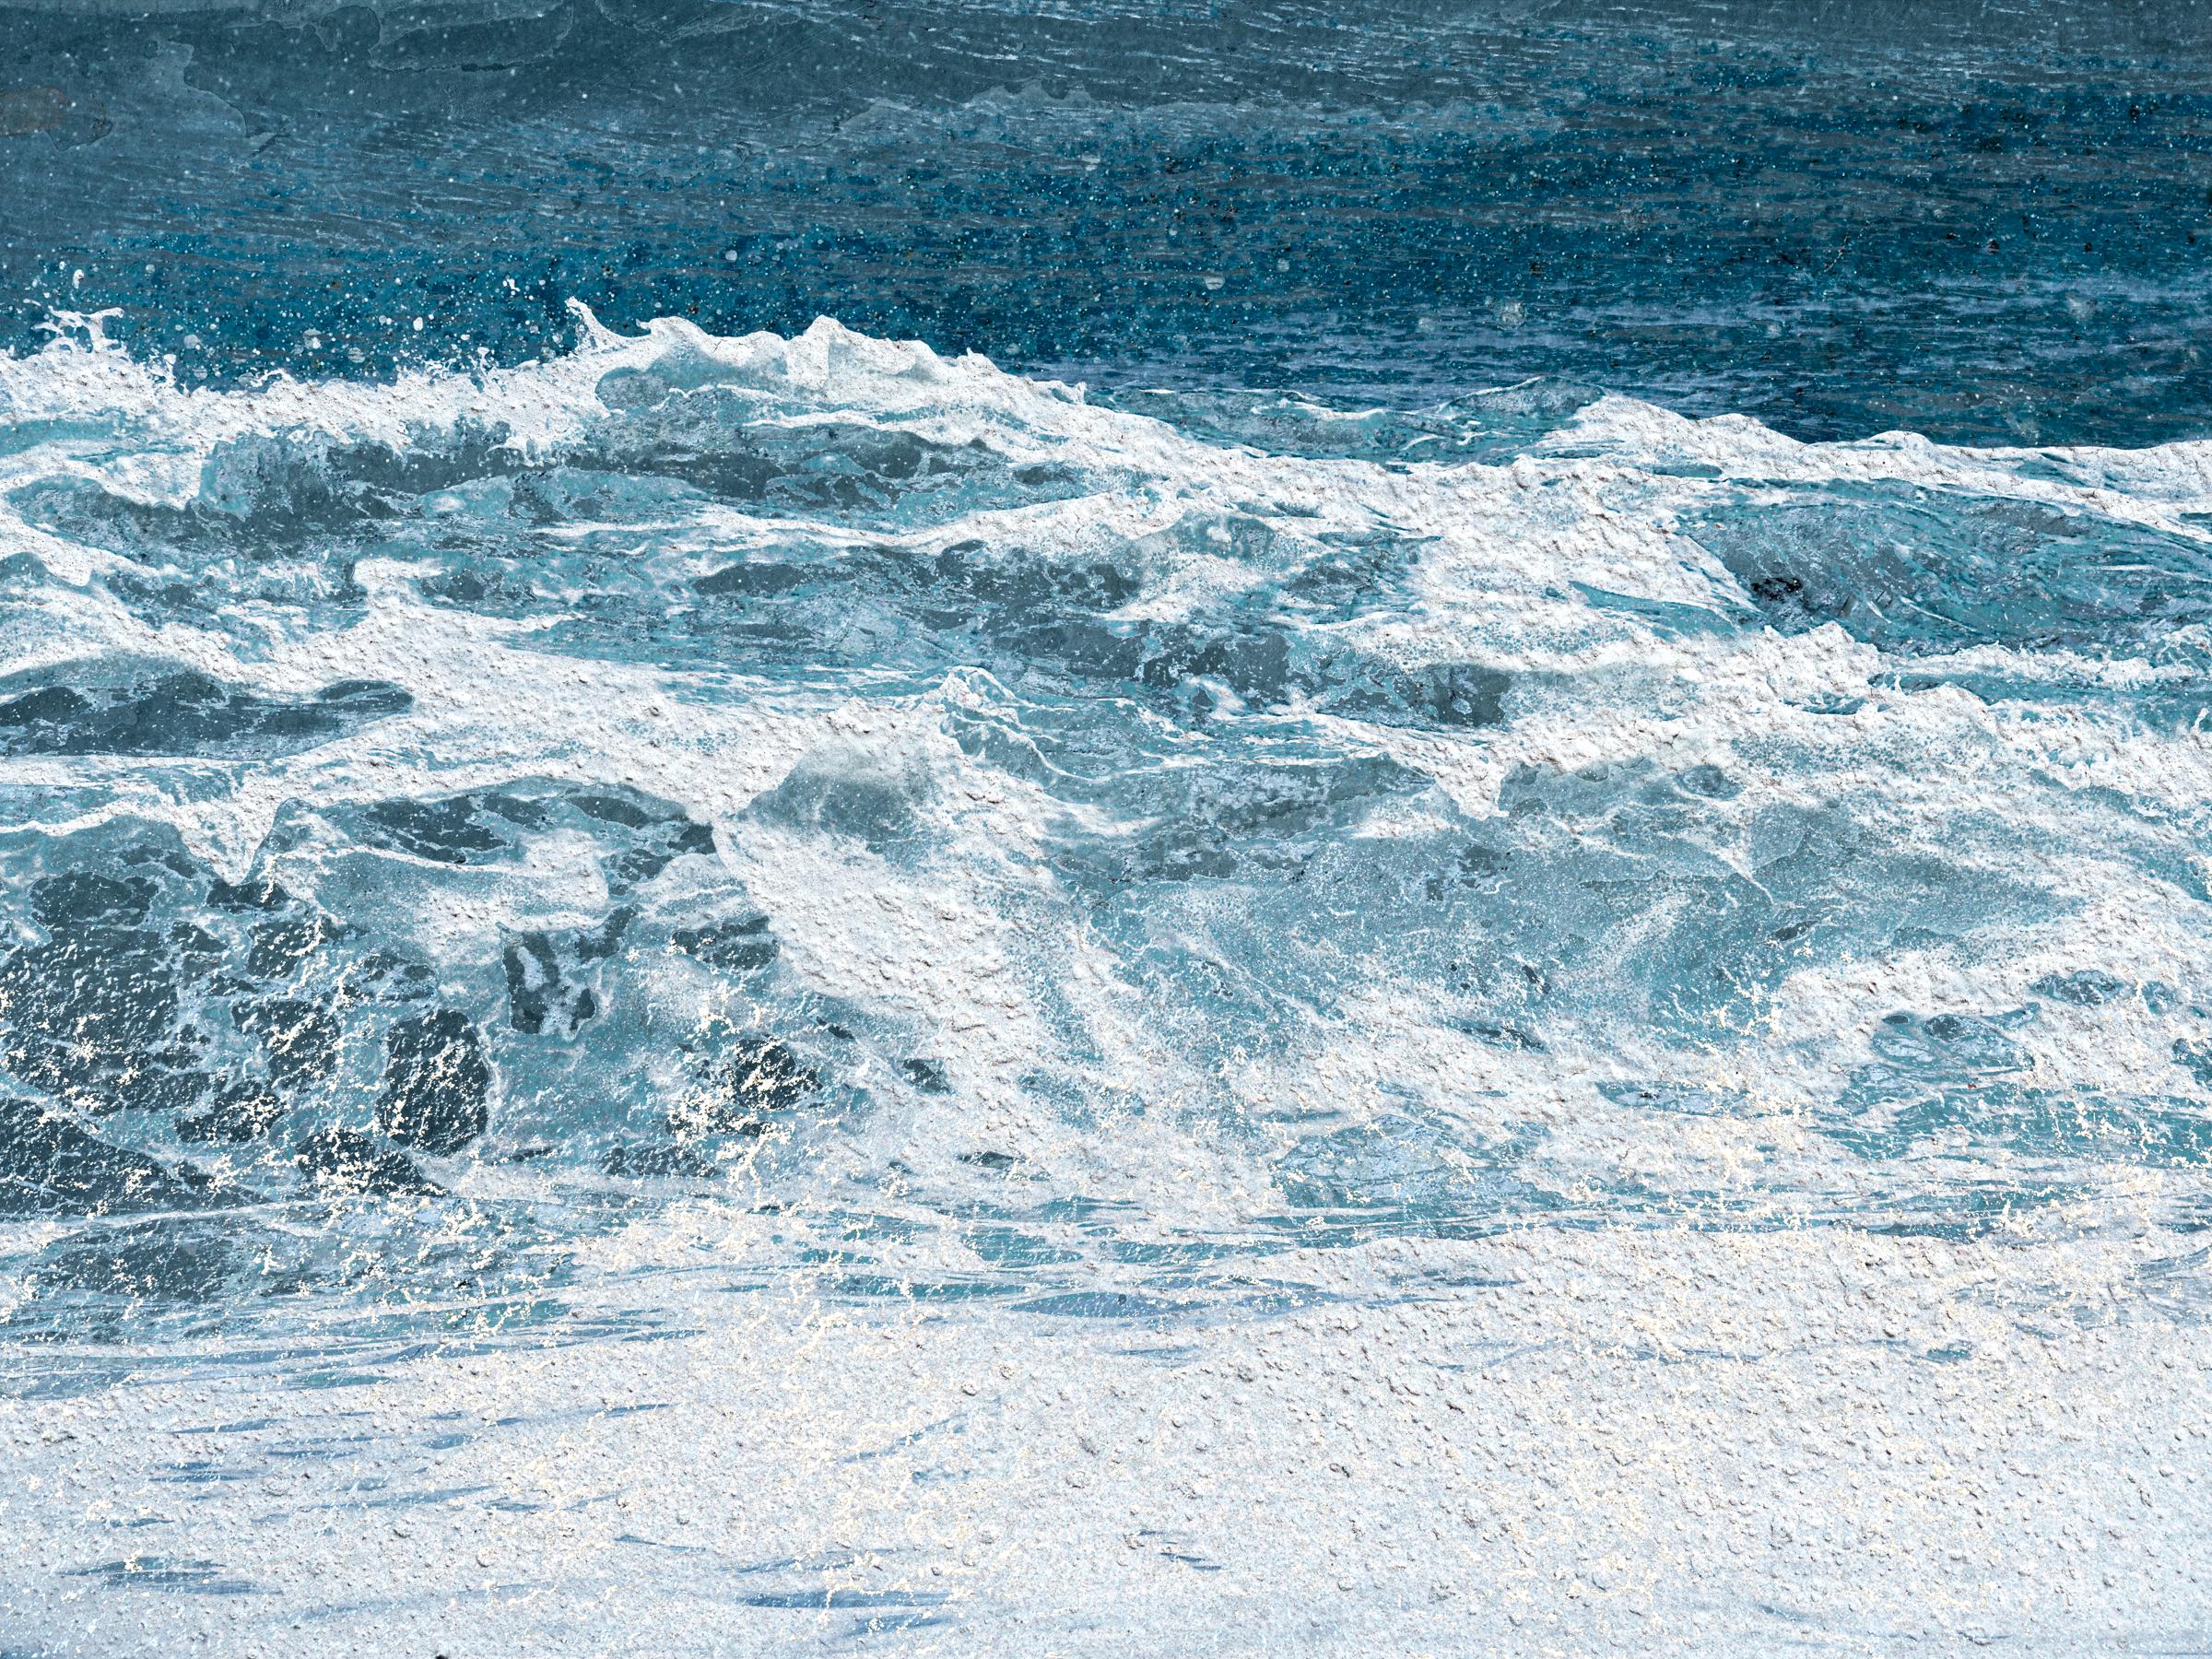 Jennifer McKinnon Abstract Photograph - Uncontained Consumption: Seafoam - composite photo, beachscape, landscape